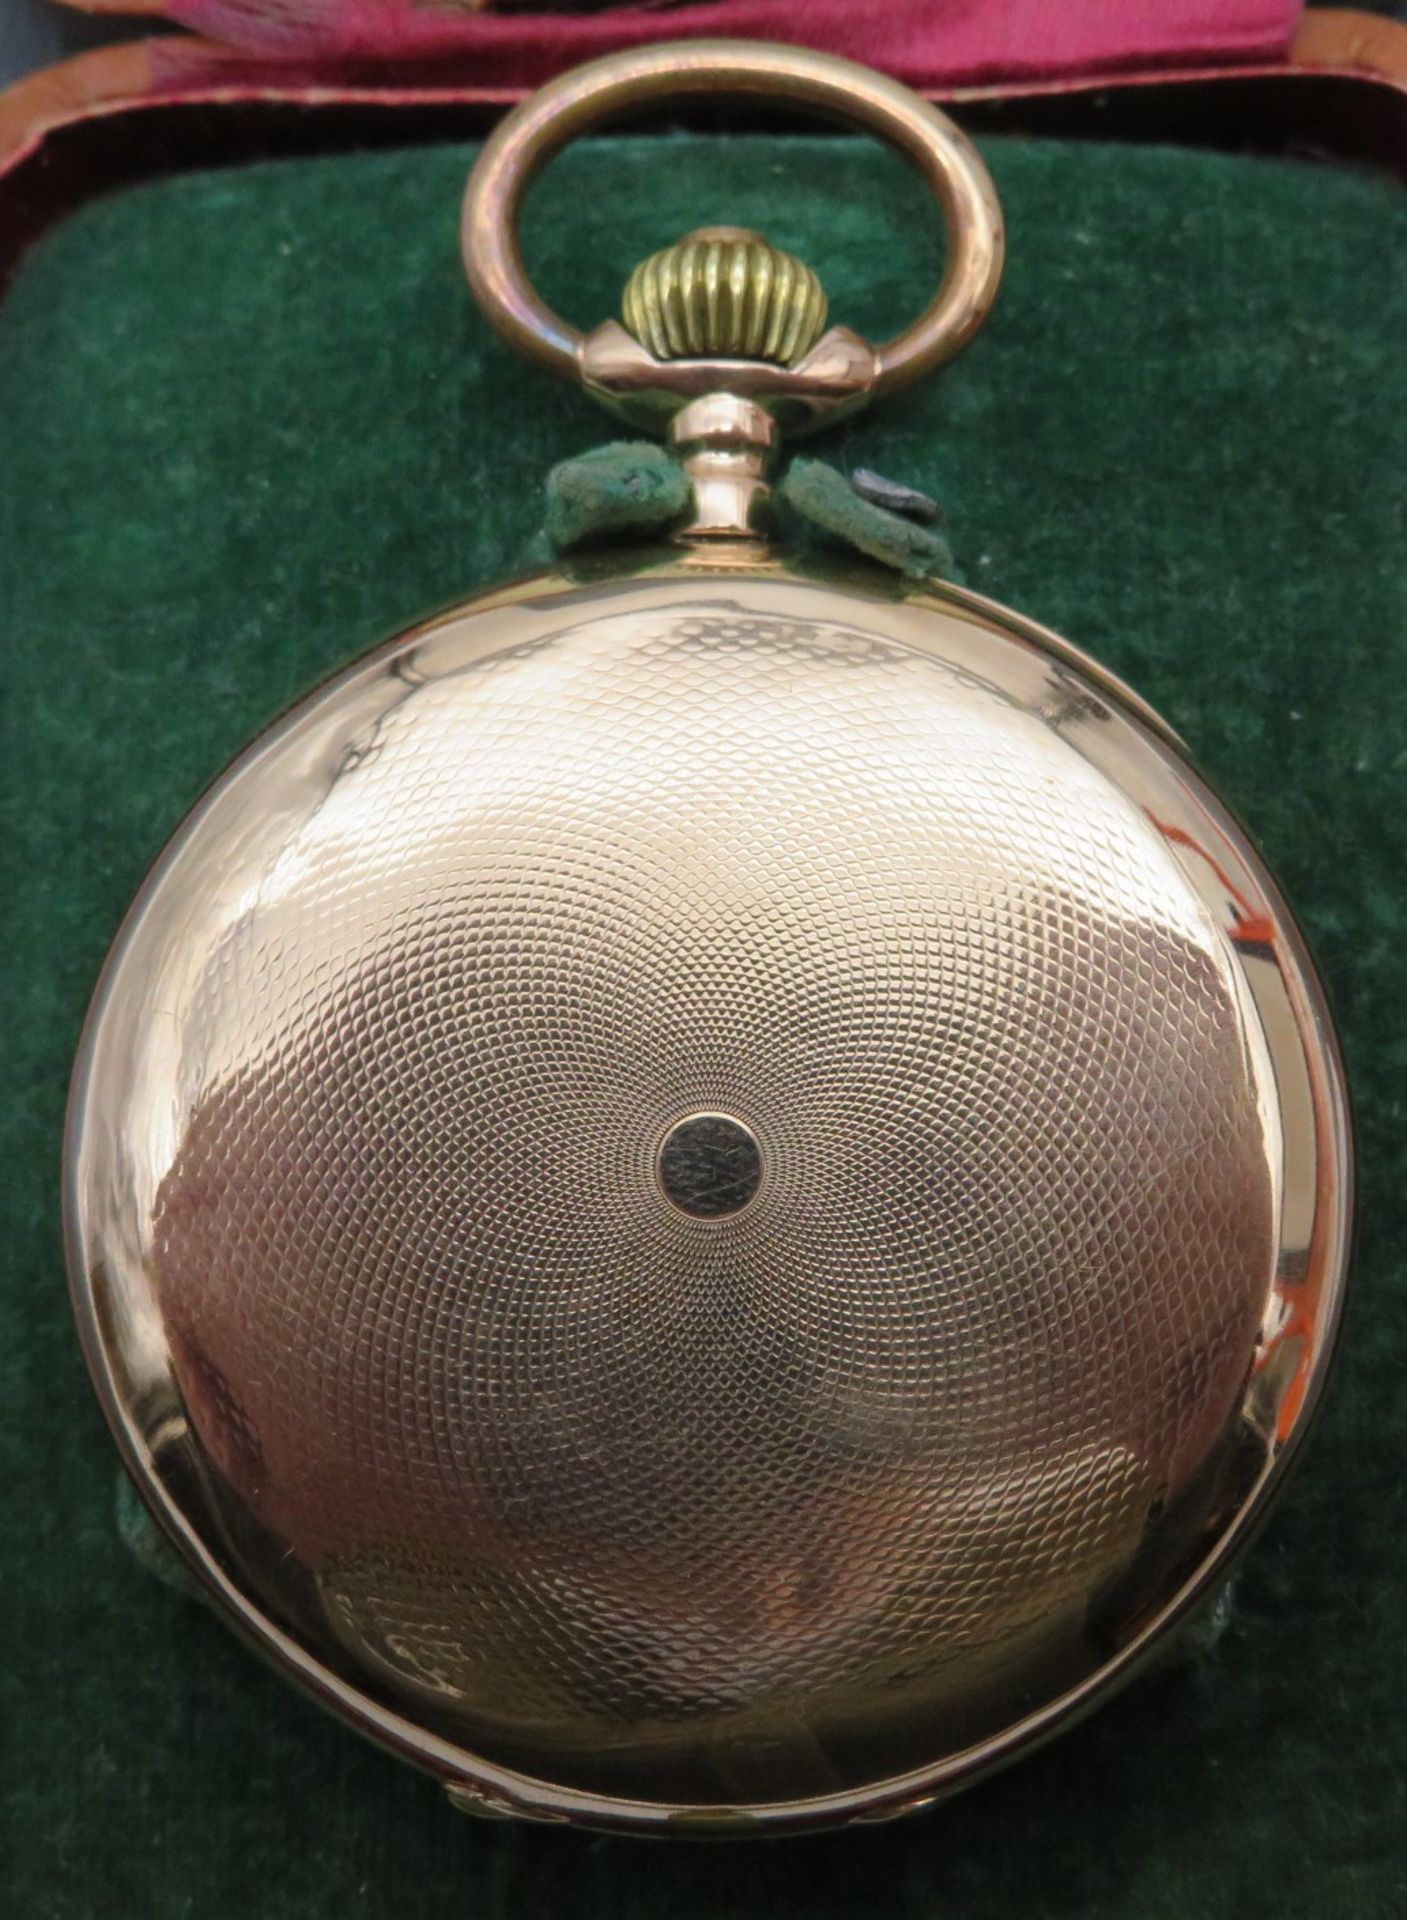 Sprungdeckeltaschenuhr, 19. Jahrhundert, Breguet Remontoir Nr. 78099, Gehäuse und Innendeckel Rotgo - Image 3 of 5